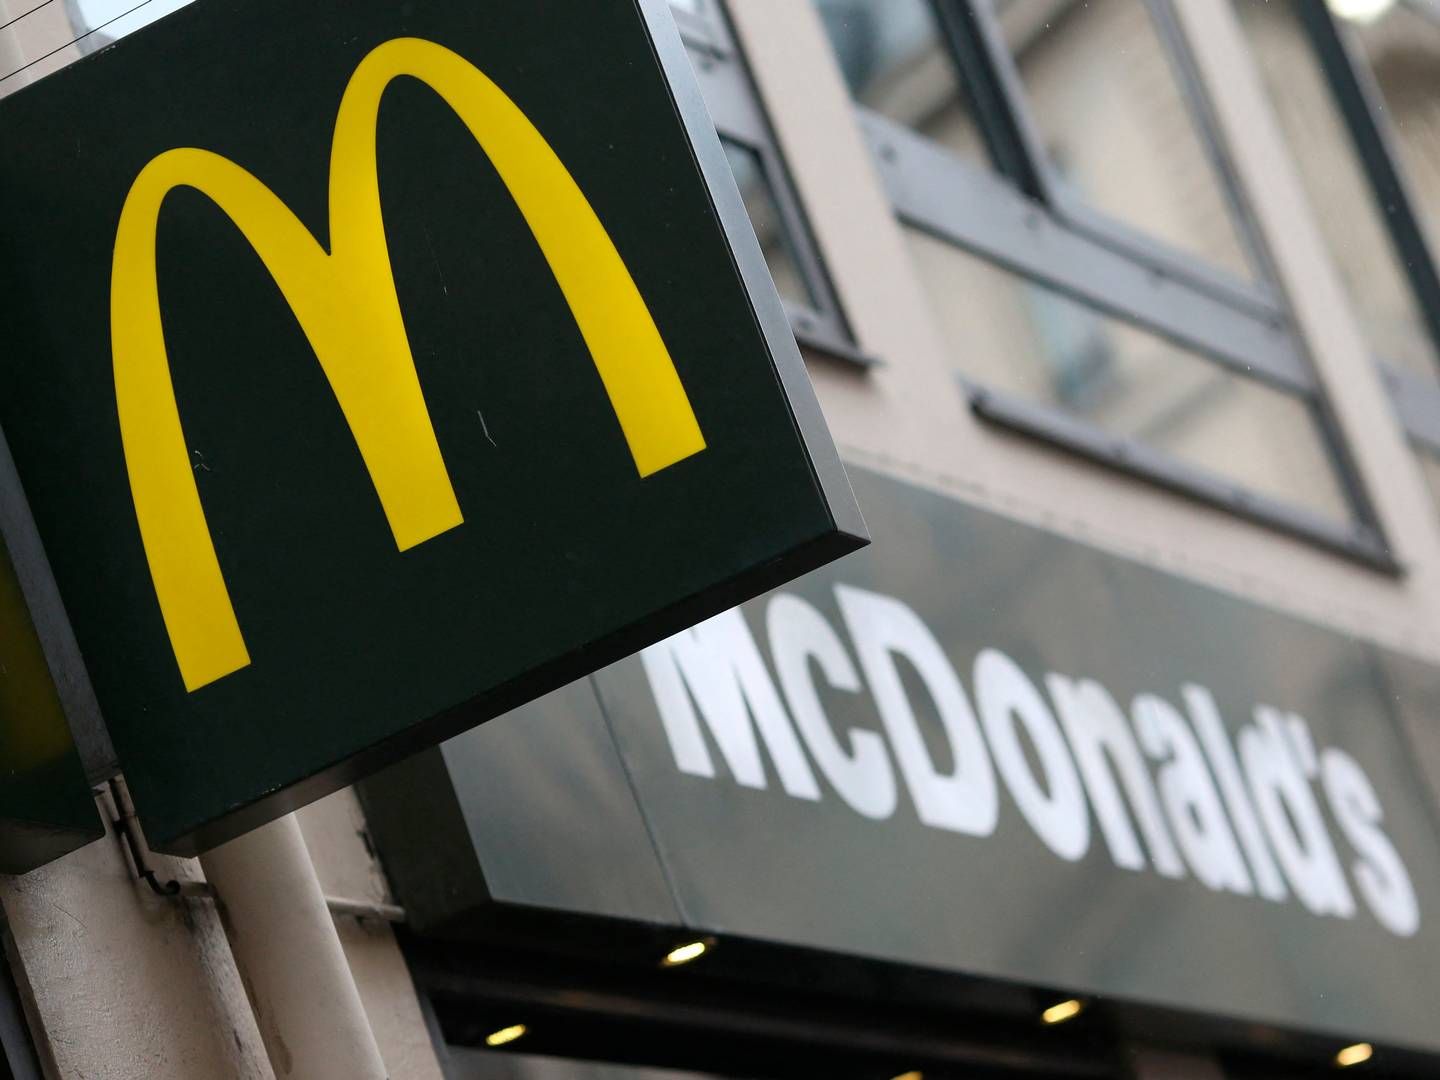 McDonald's rapporterede en lavere salgsvækst i første kvartal end forventet. | Foto: Kenzo Tribouillard